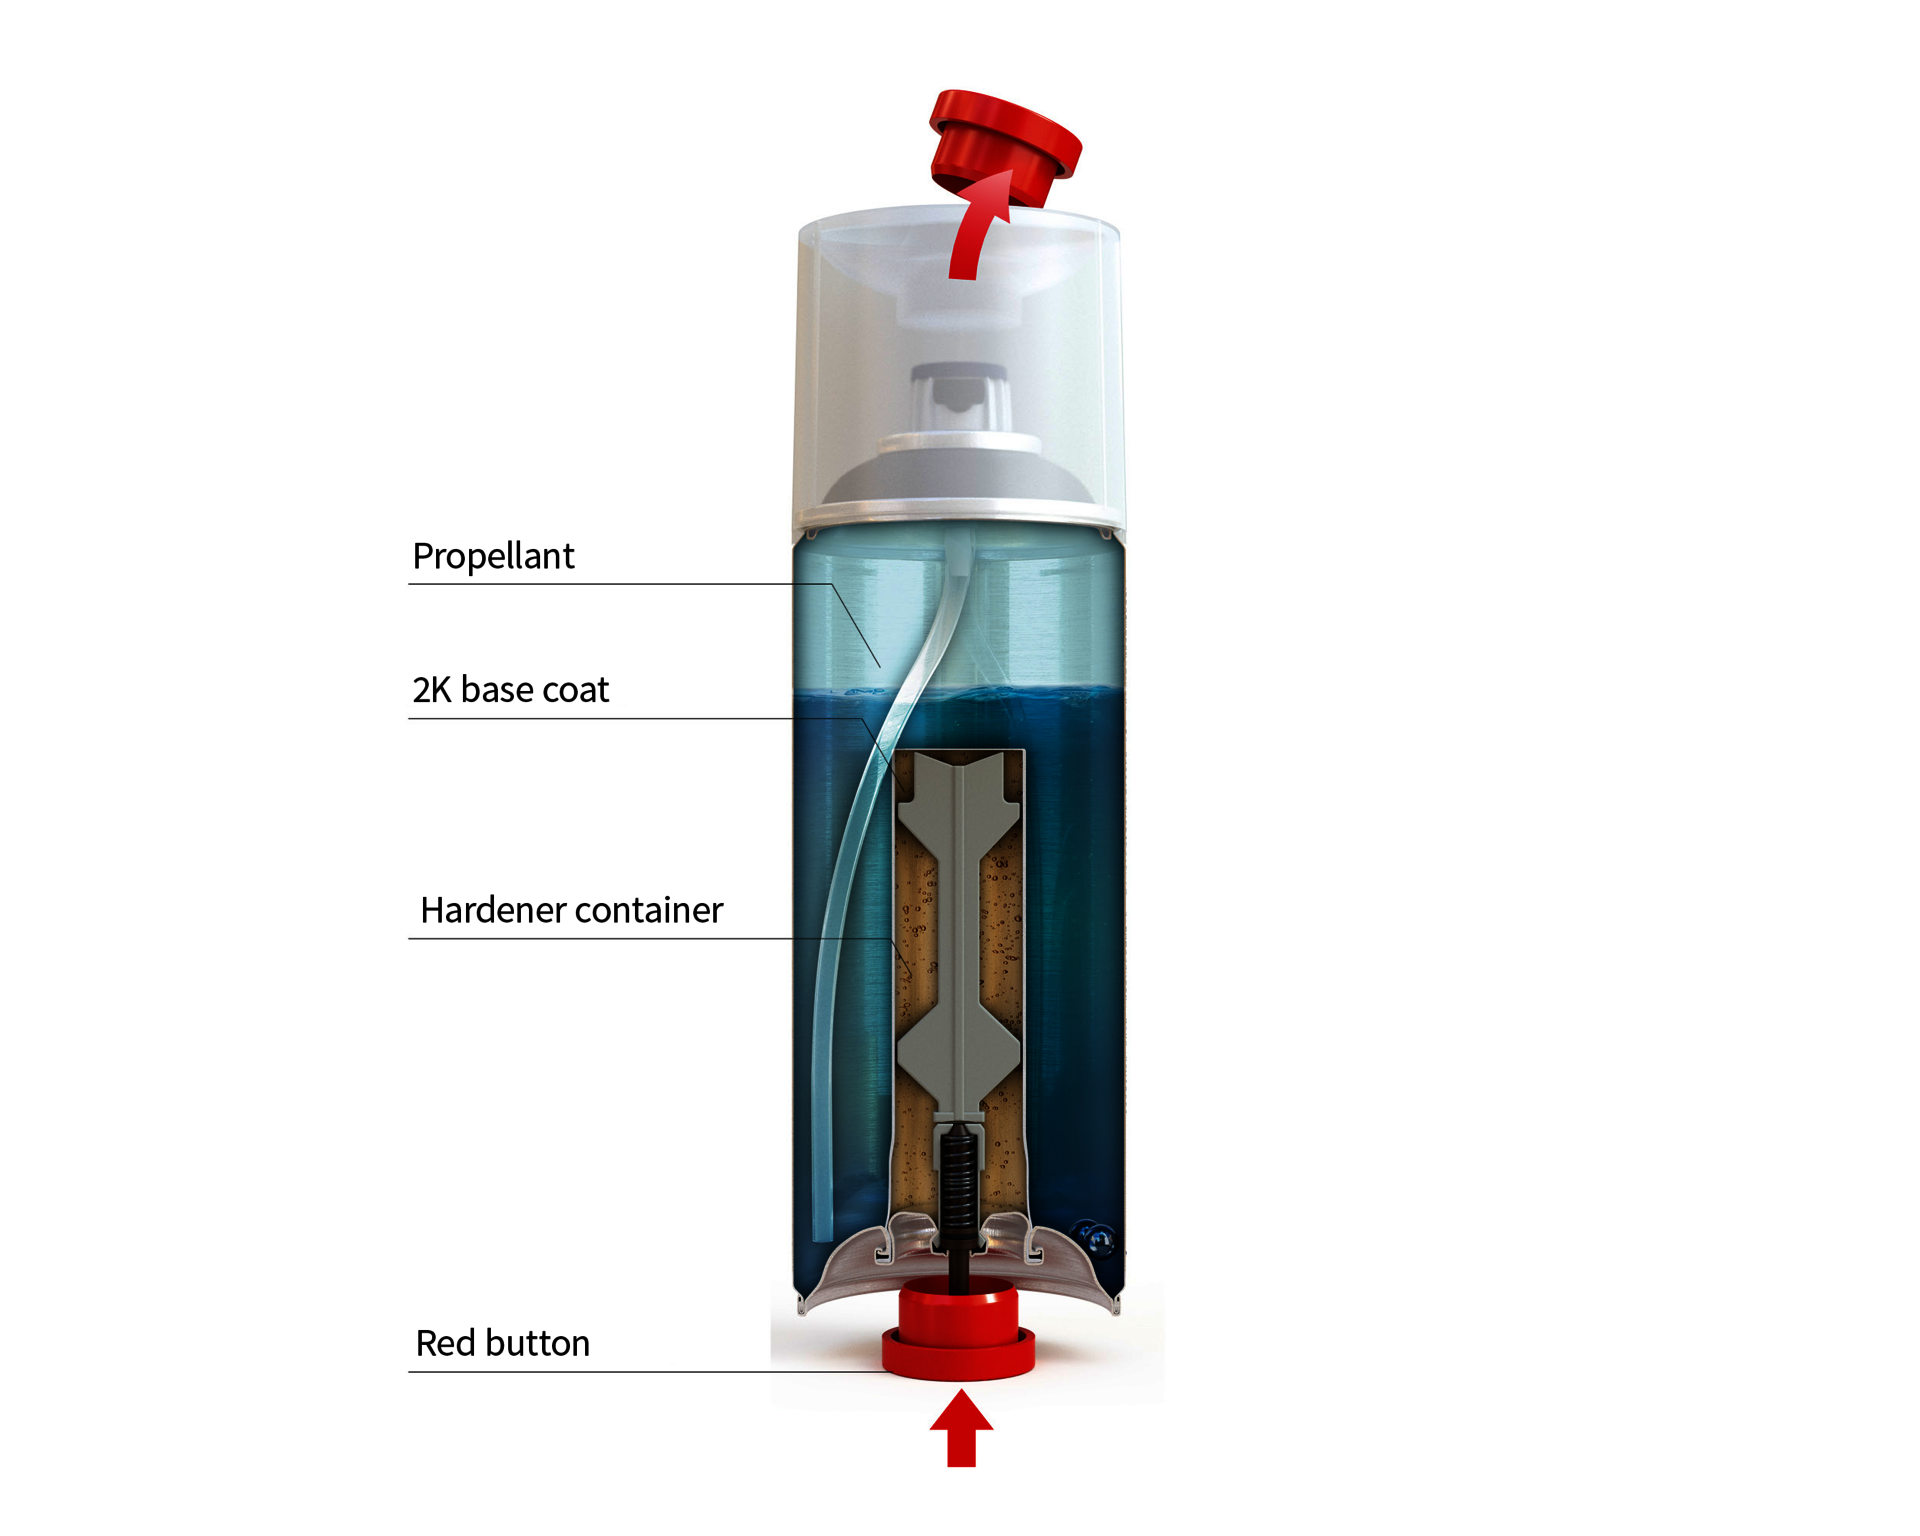 Zaphiro incorpora el nuevo barniz en spray para faros de SprayMax